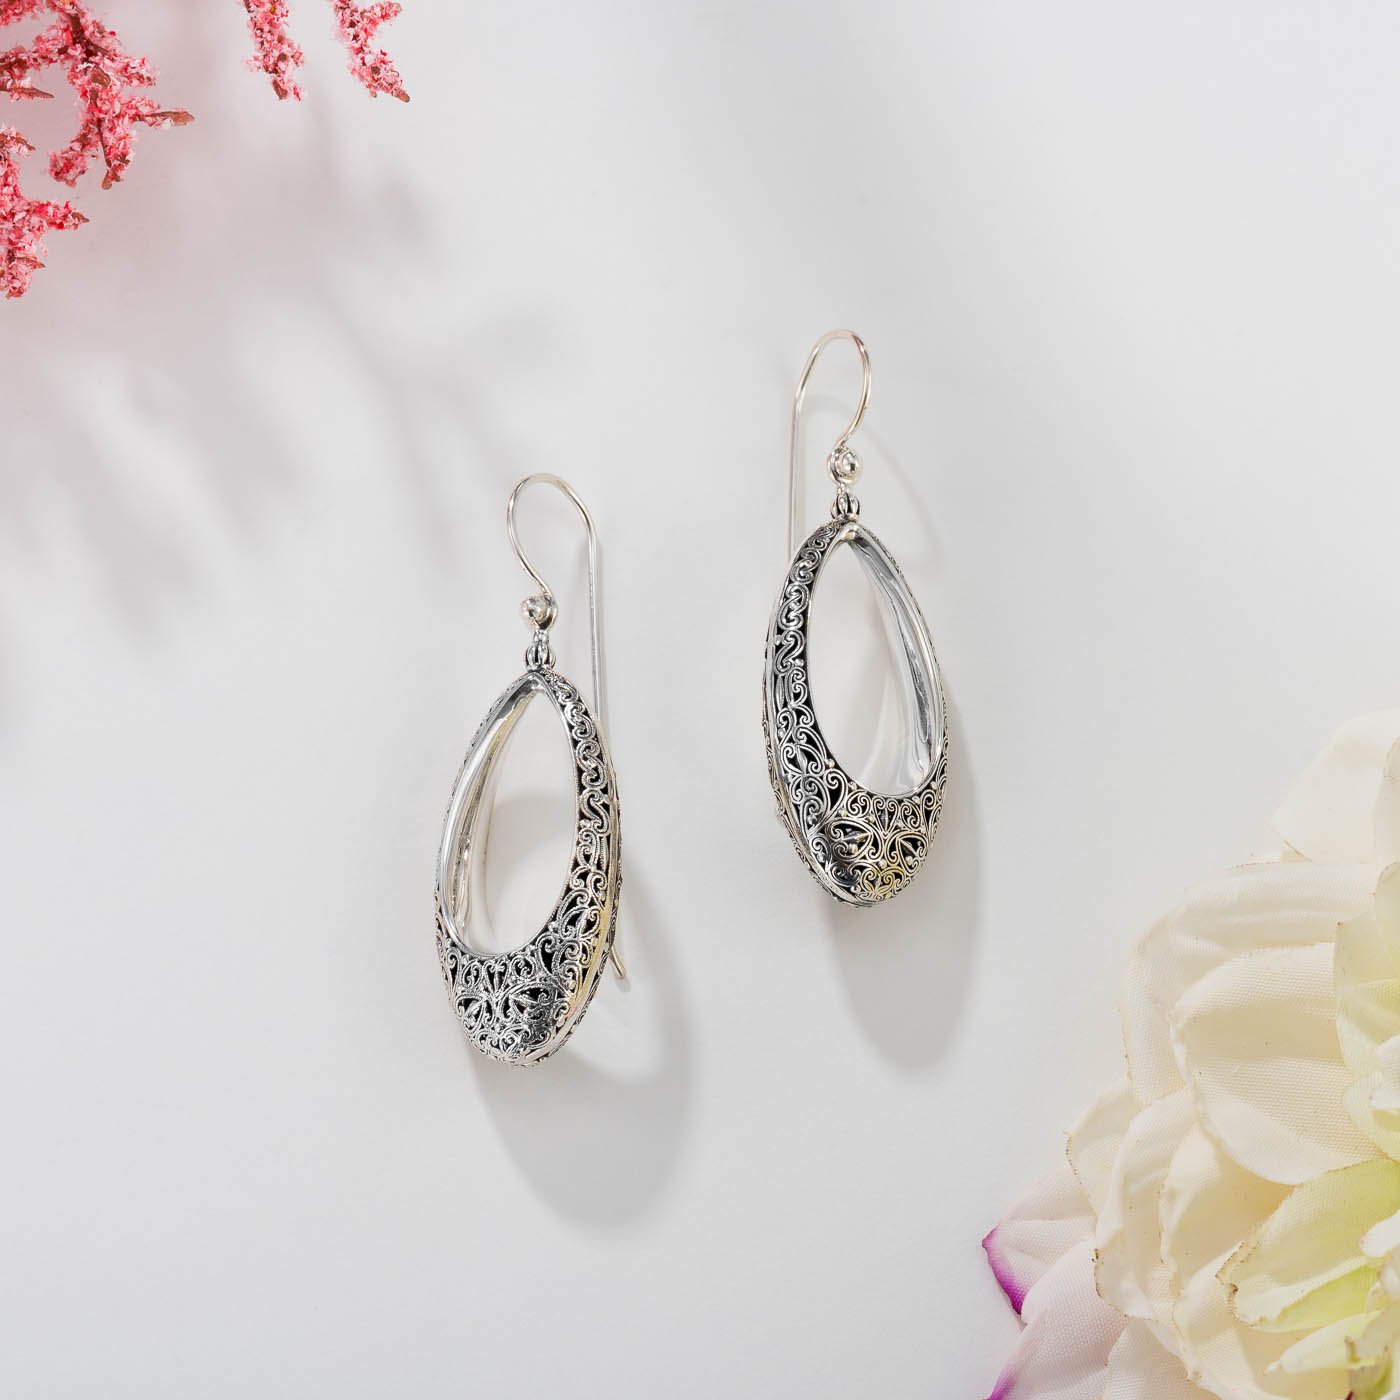 Kallisto oval Earrings in oxidized silver